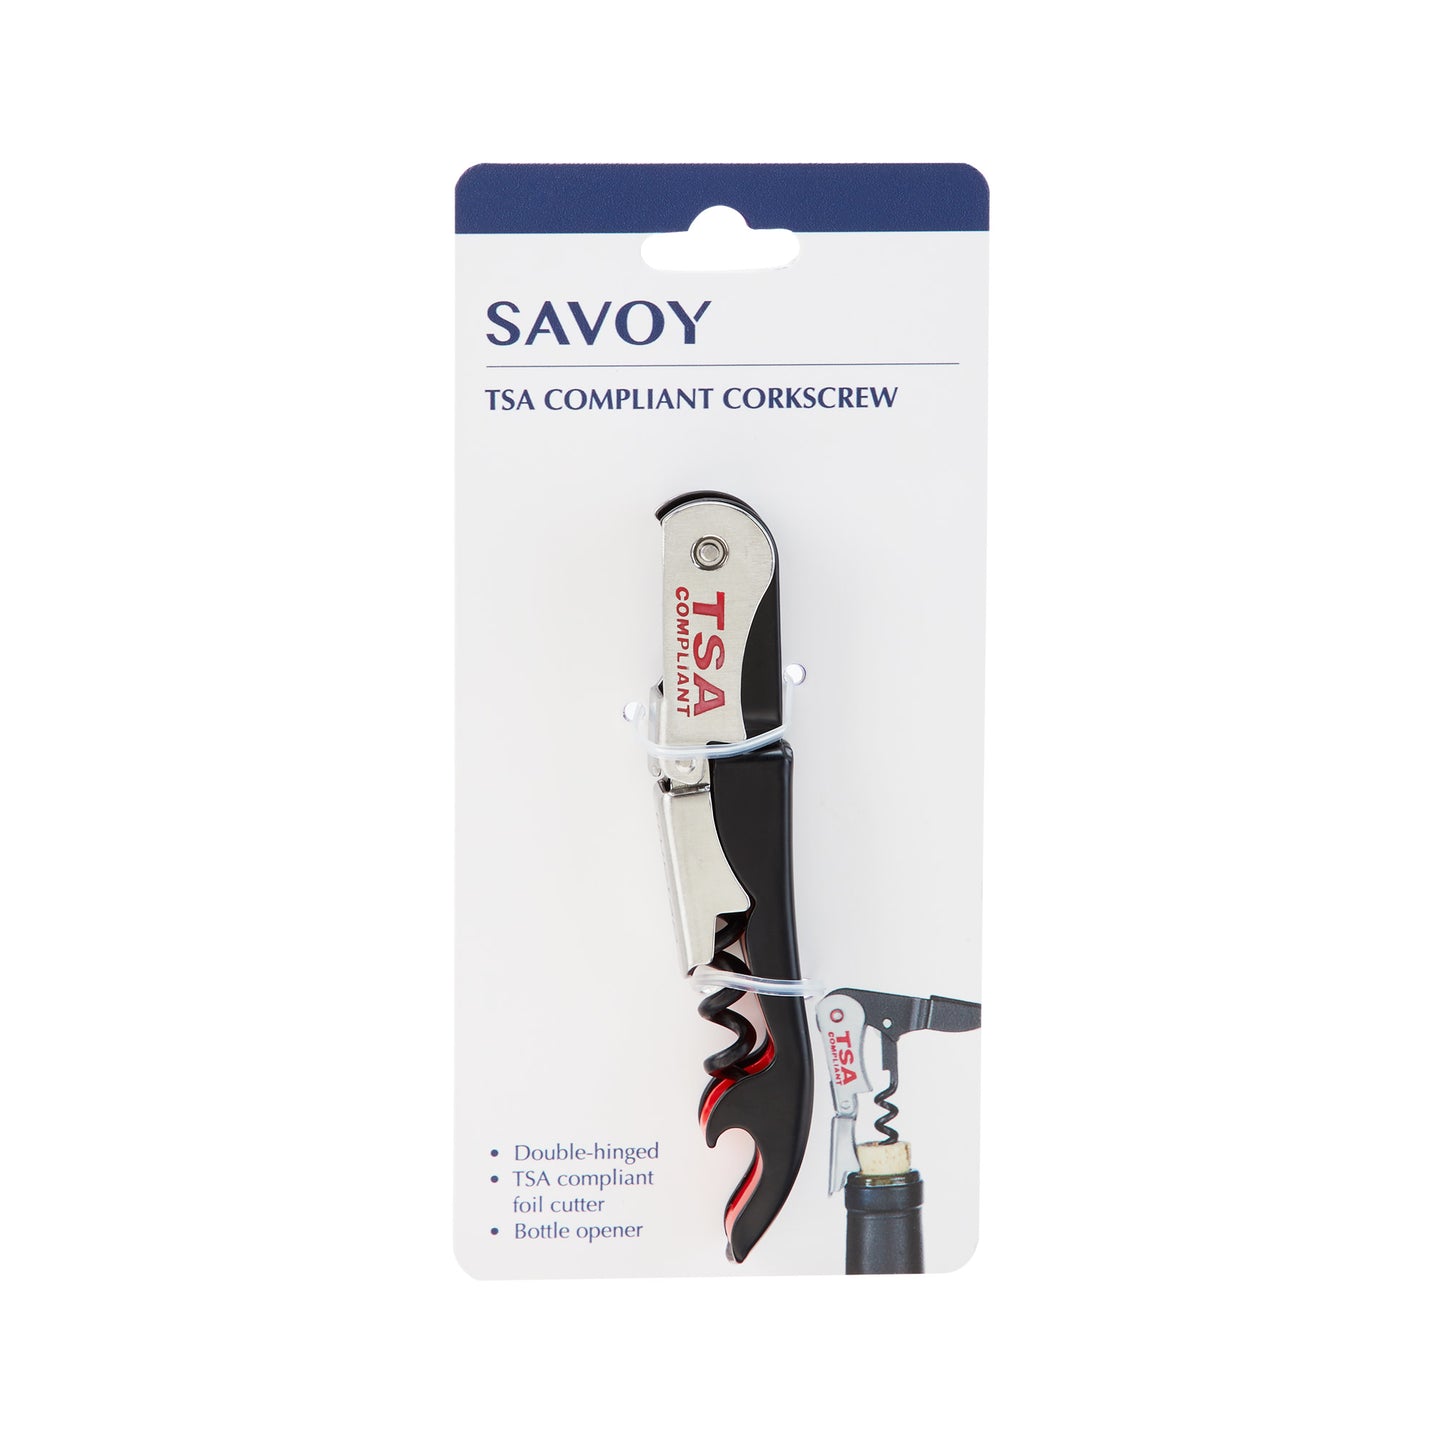 TSA Compliant Corkscrew by Savoy